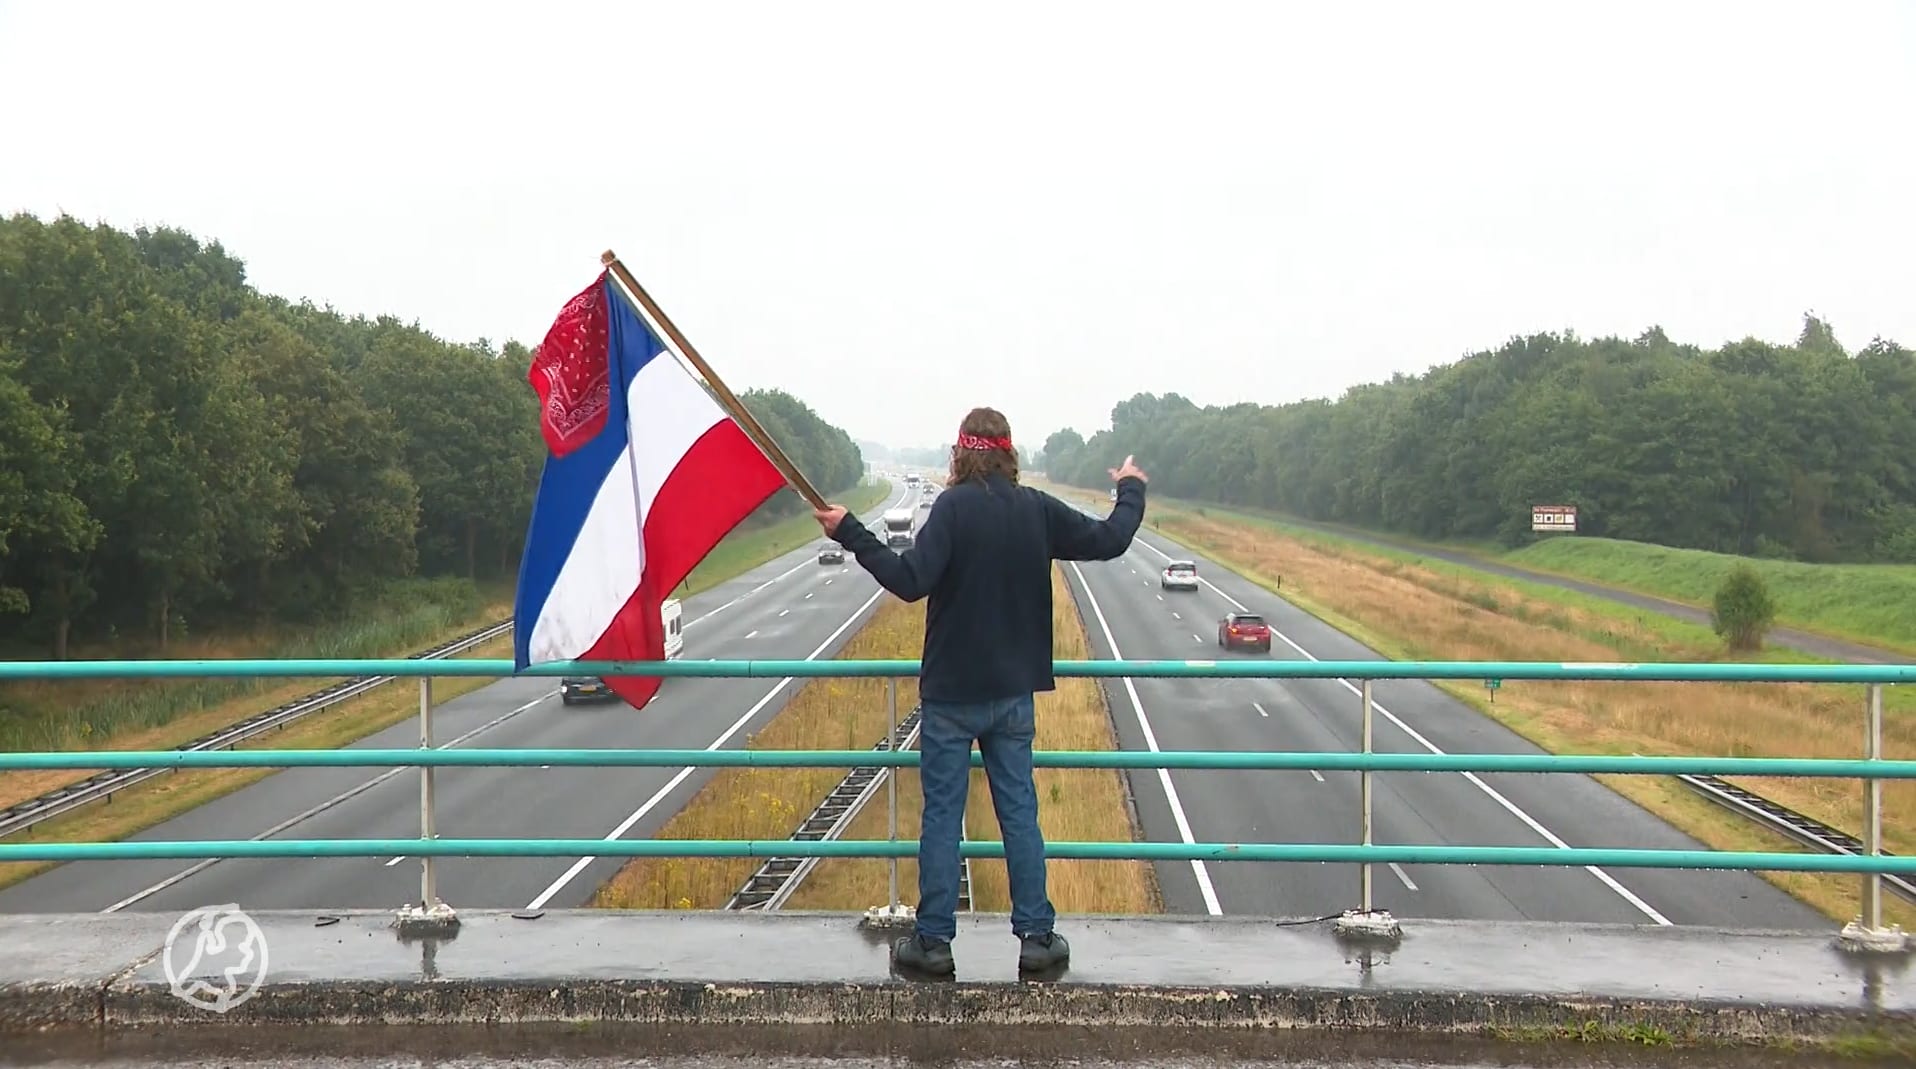 Kees staat elke dag met vlag en wimpel op viaduct voor de boeren: 'Ik krijg zoveel support!'